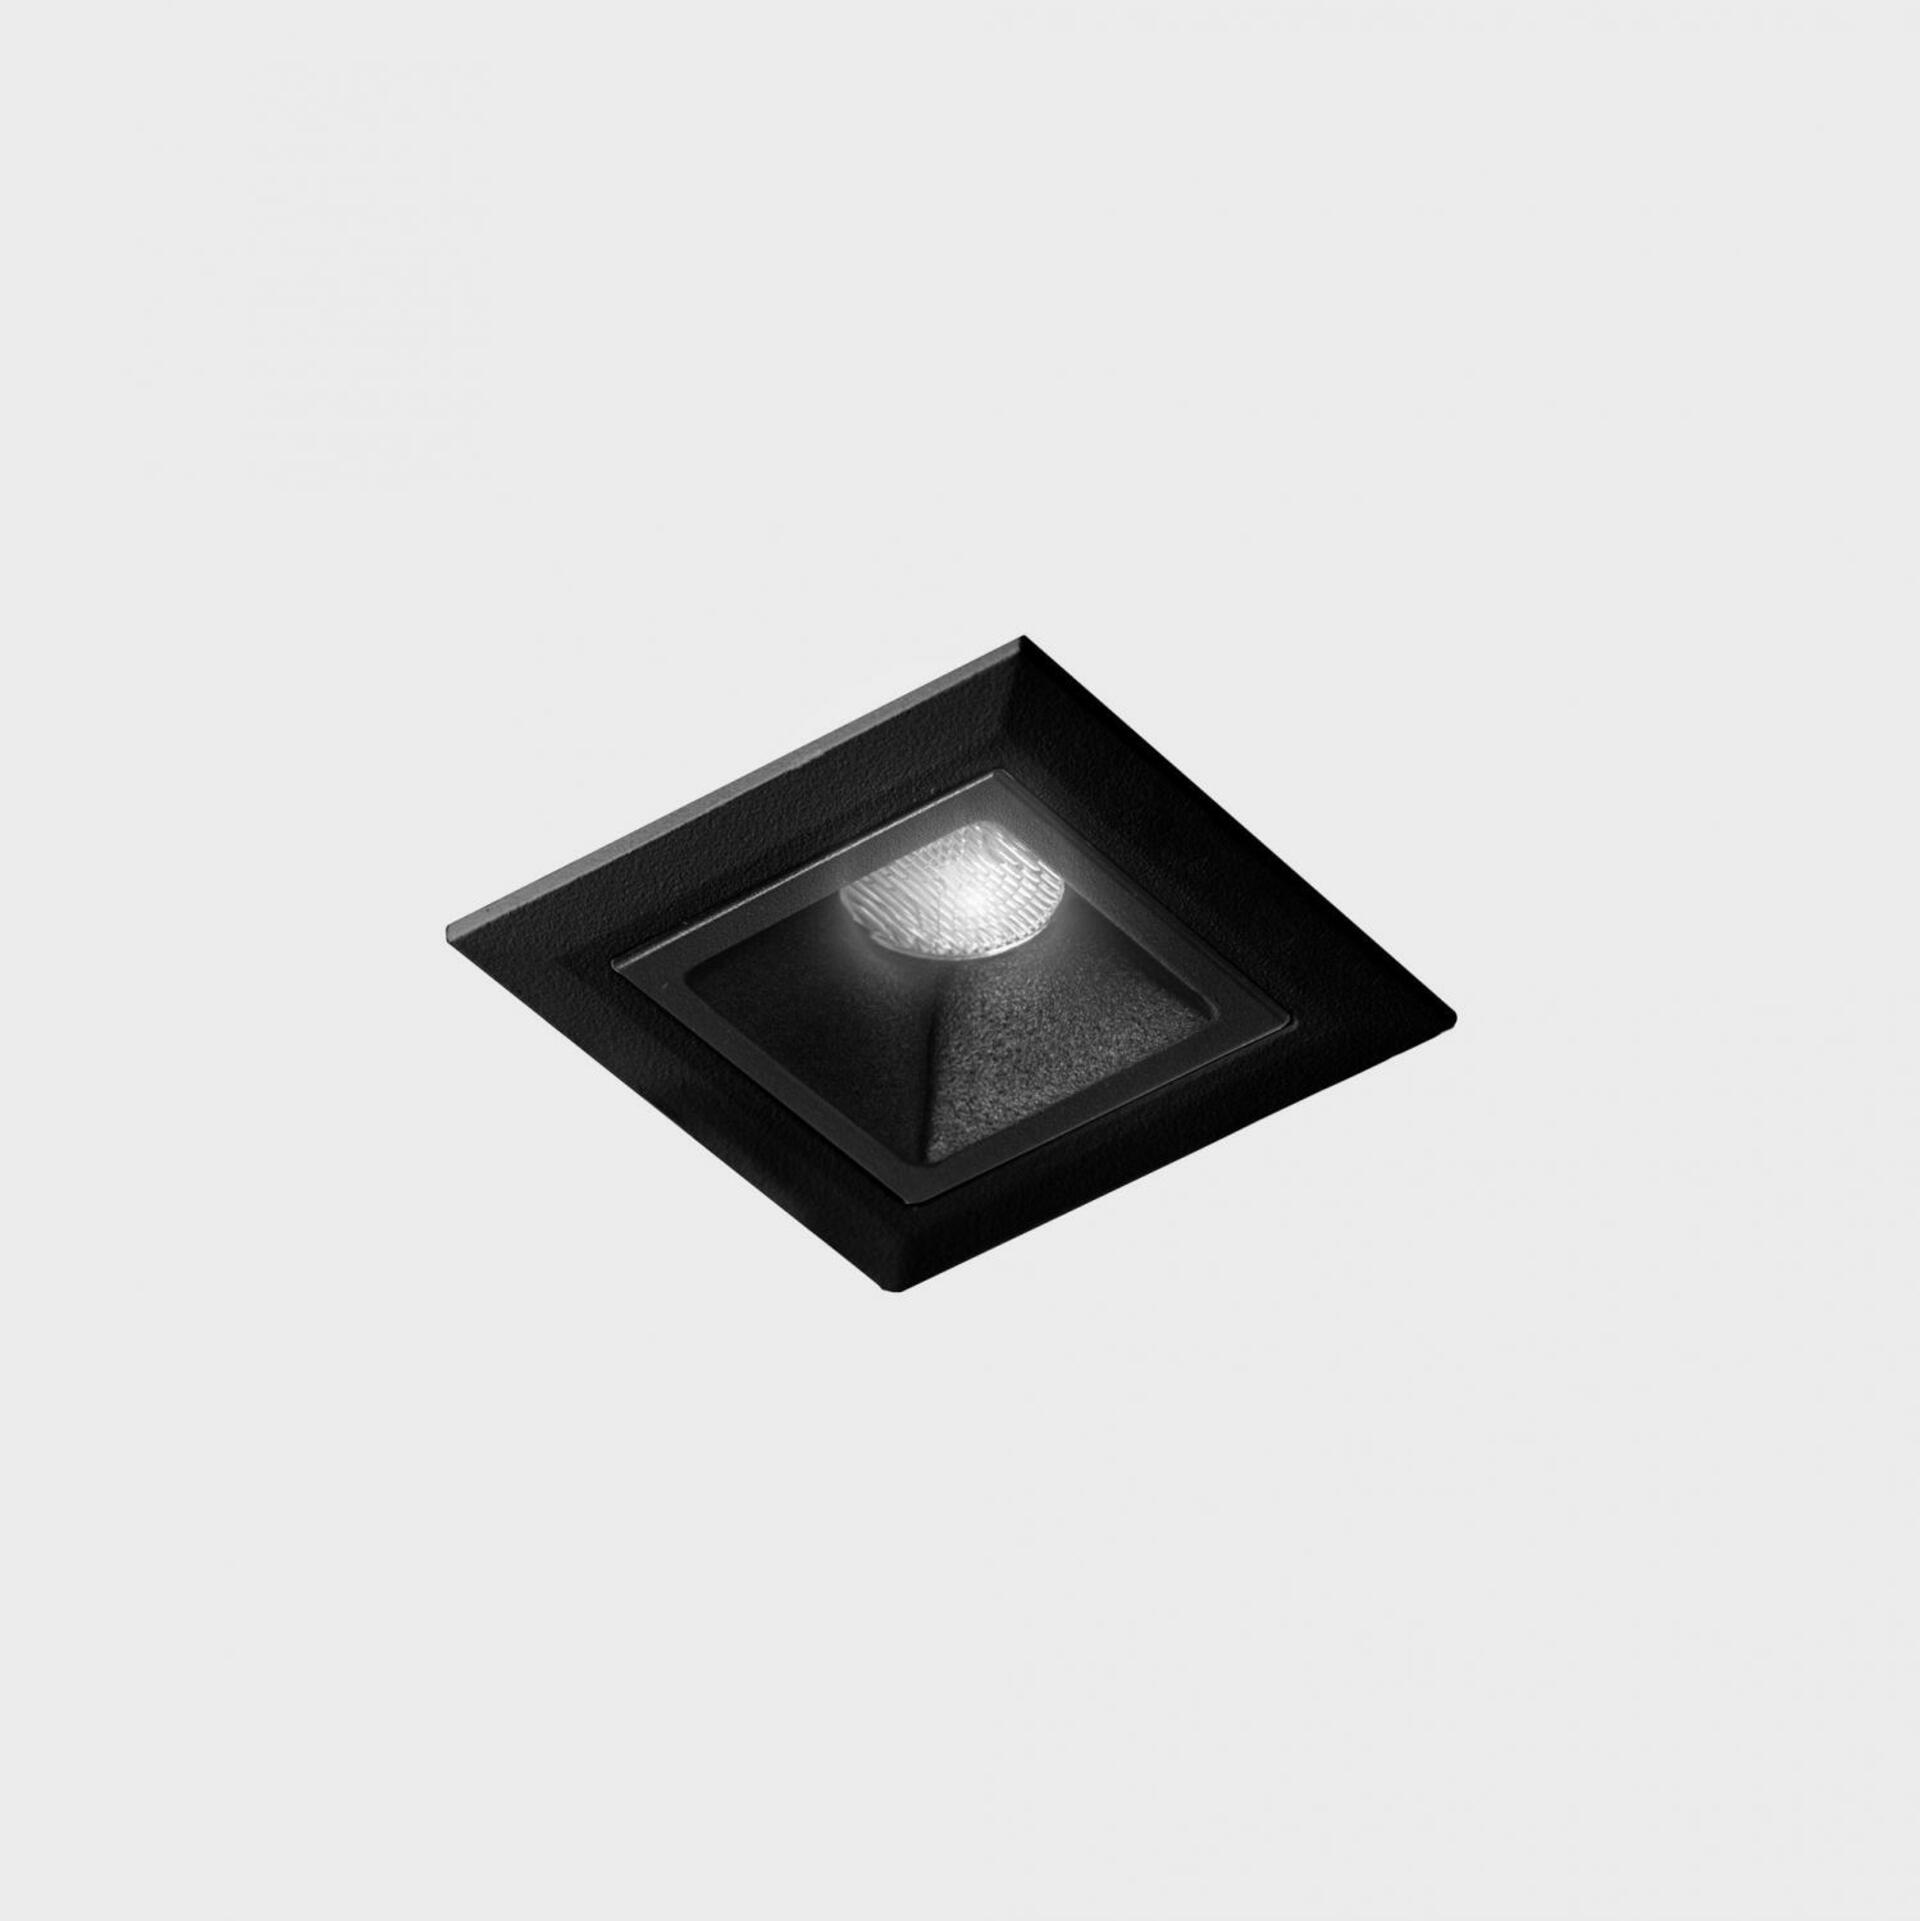 KOHL LIGHTING KOHL-Lighting NSES zapuštěné svítidlo s rámečkem 45x45 mm černá 2 W CRI 90 2700K DALI